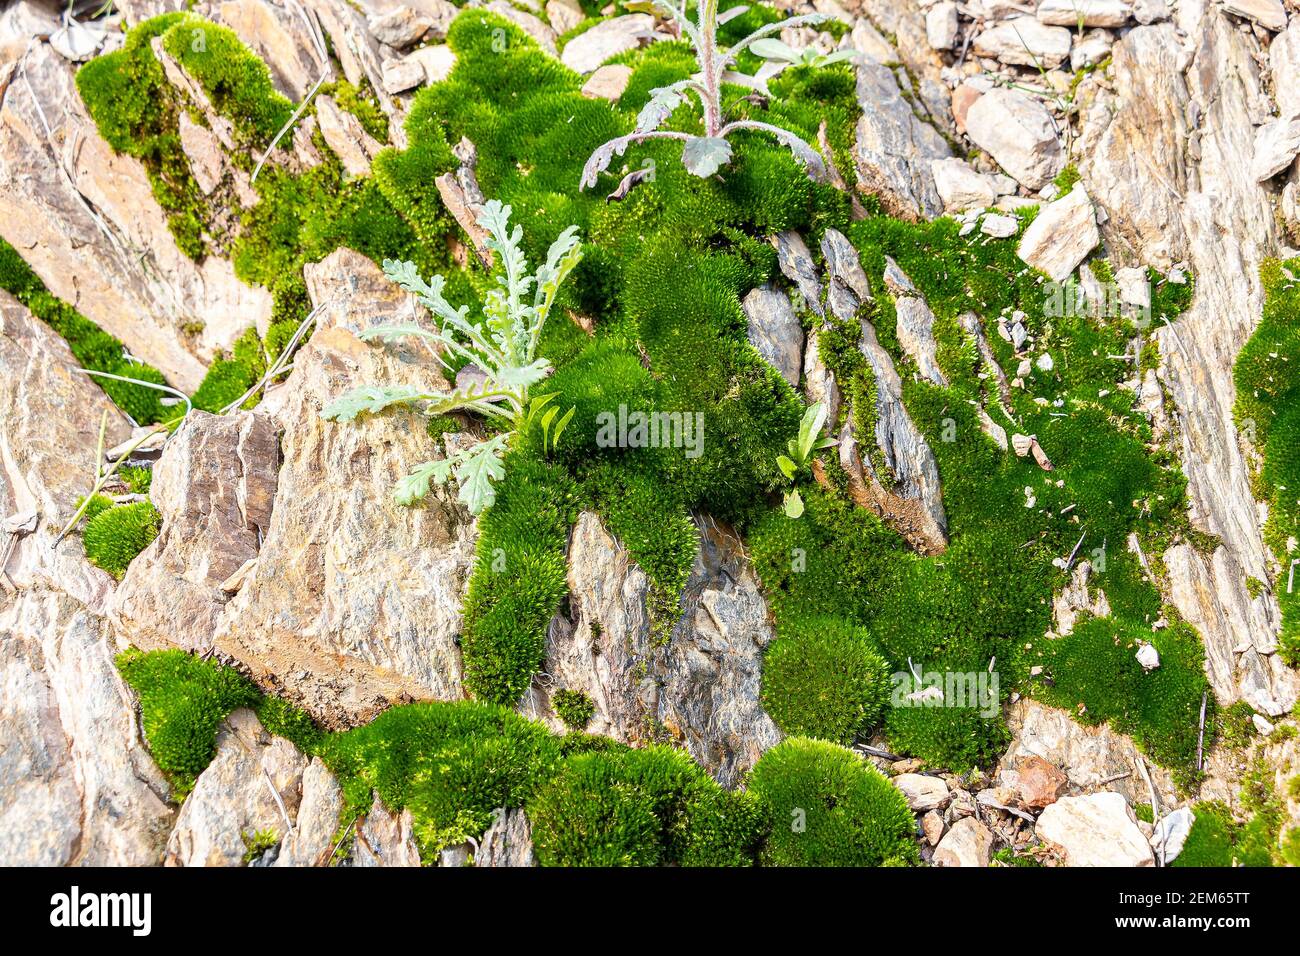 Hermoso musgo verde brillante creciendo en piedras ásperas. Rocas llenas de la textura del musgo en la naturaleza Foto de stock